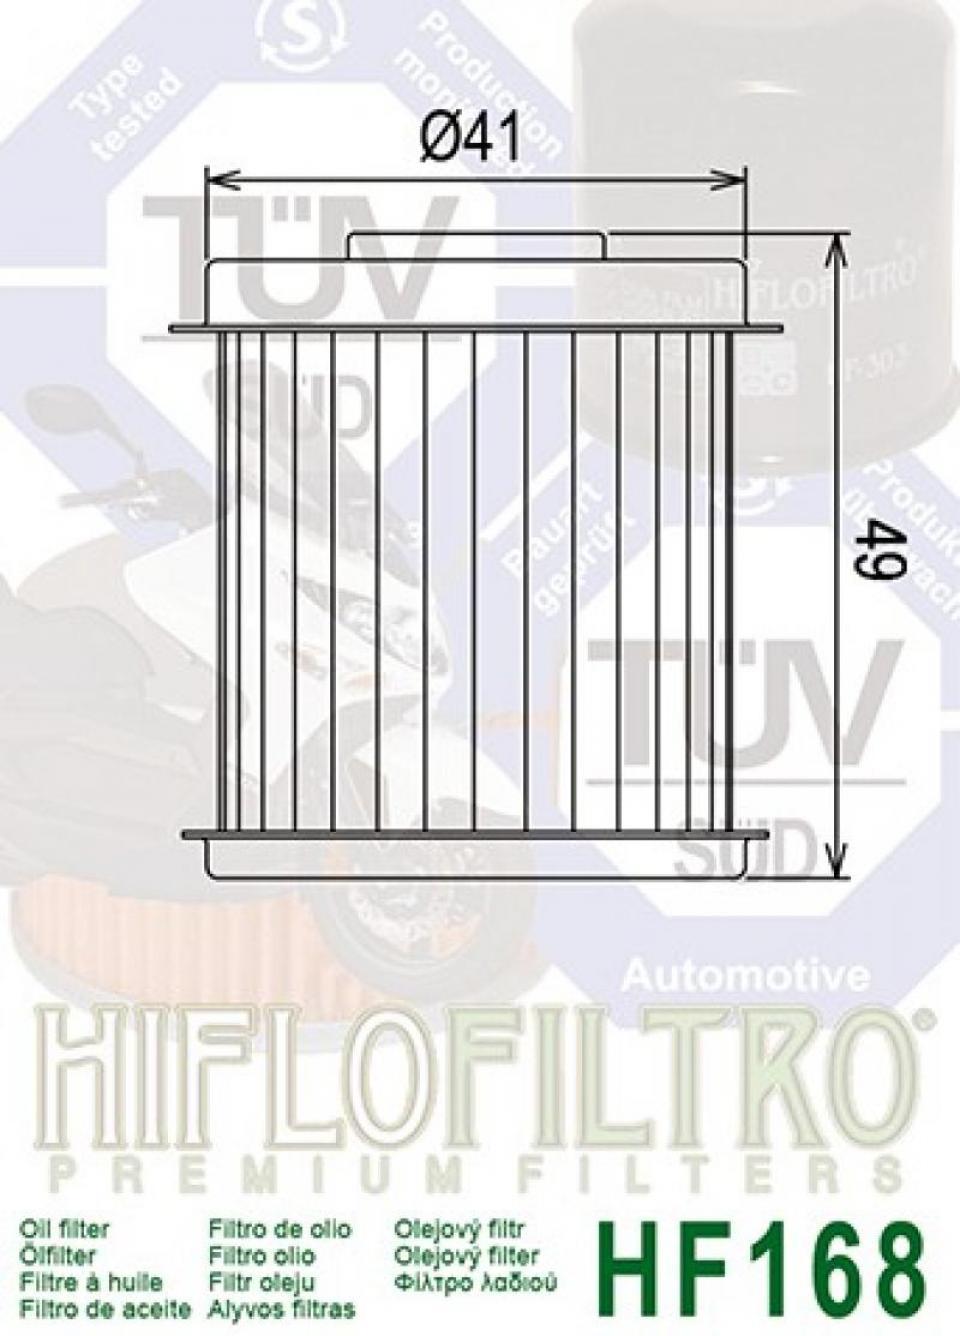 Filtre à huile Hiflofiltro pour Scooter Daelim 125 NS 1998 à 2005 HF168 / 15412-SA1T-000 Neuf